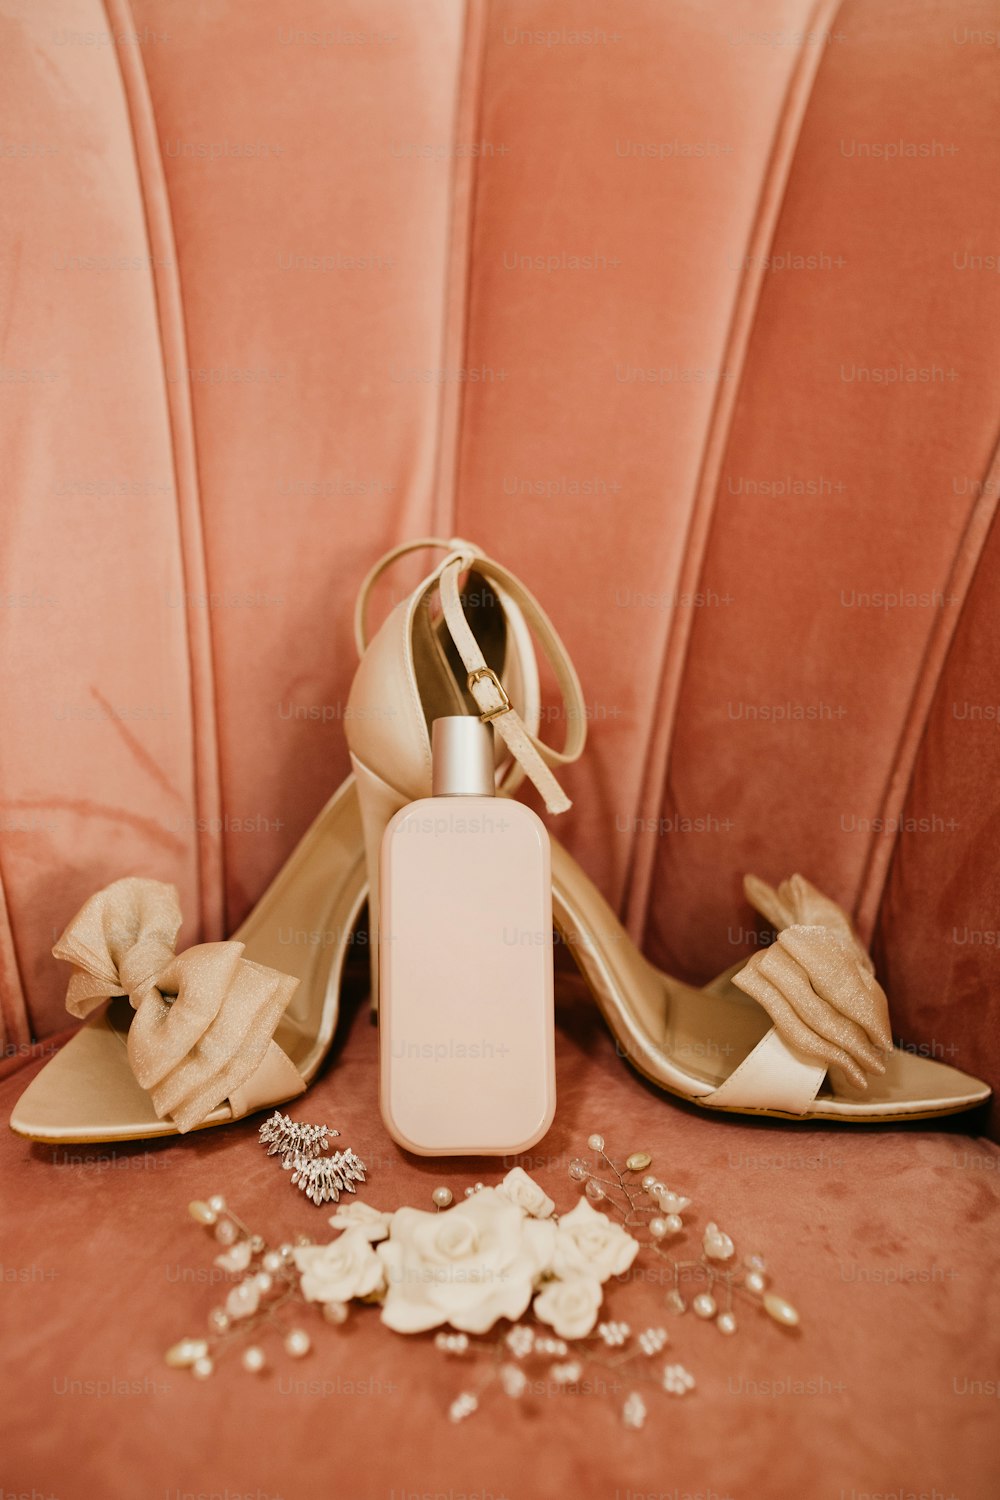 Un par de zapatos de tacón alto junto a una botella de perfume